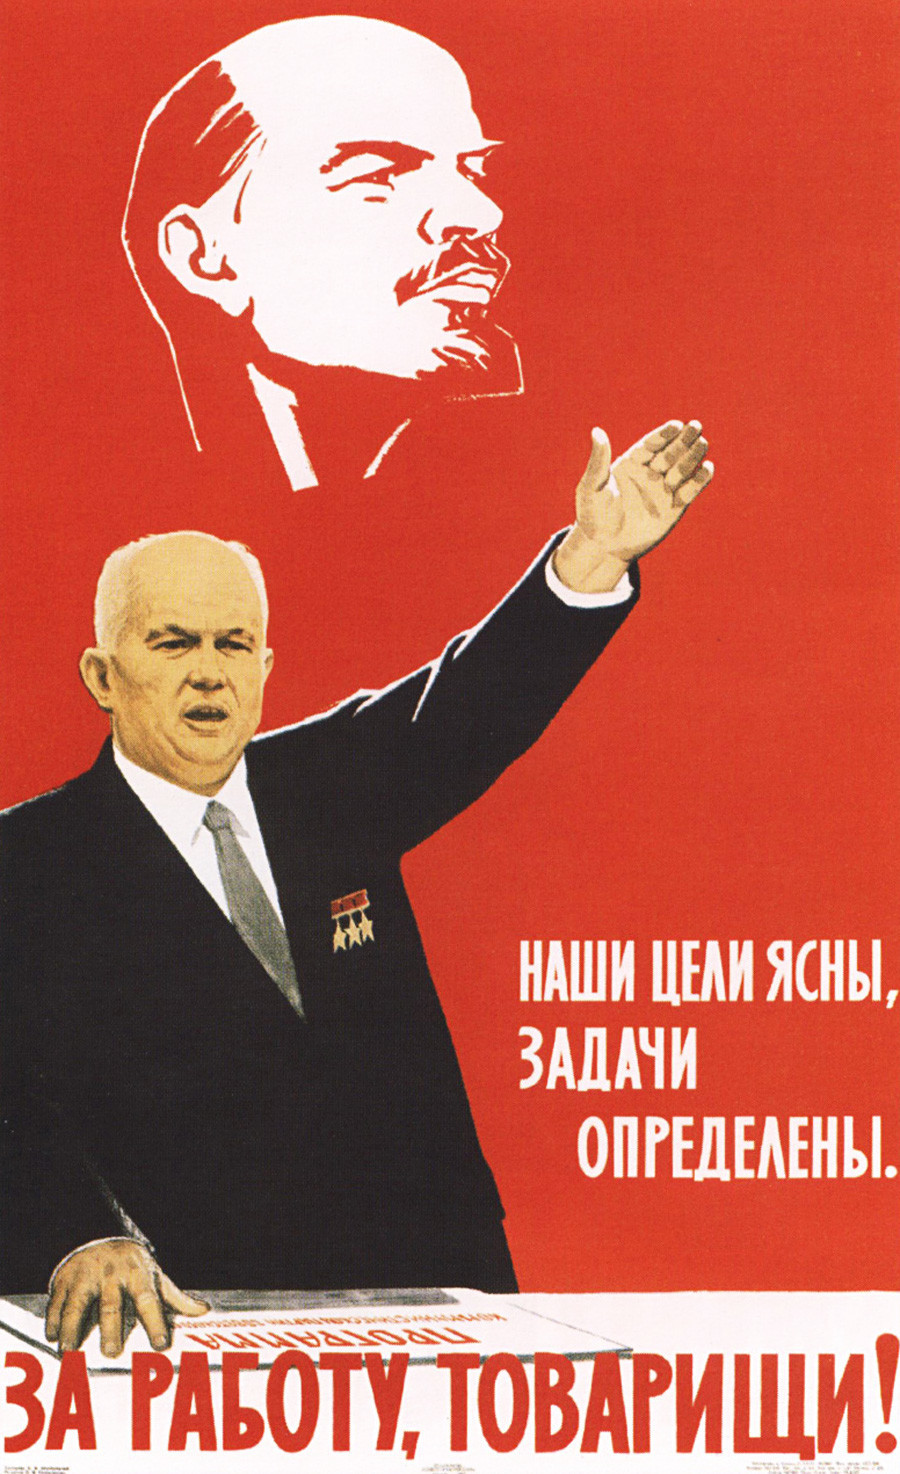 “Nossos objetivos são claros, nossas tarefas são determinadas. Vamos ao trabalho, továrischi!” (fala atribuída ao líder da URSS Nikita Khruschóv).